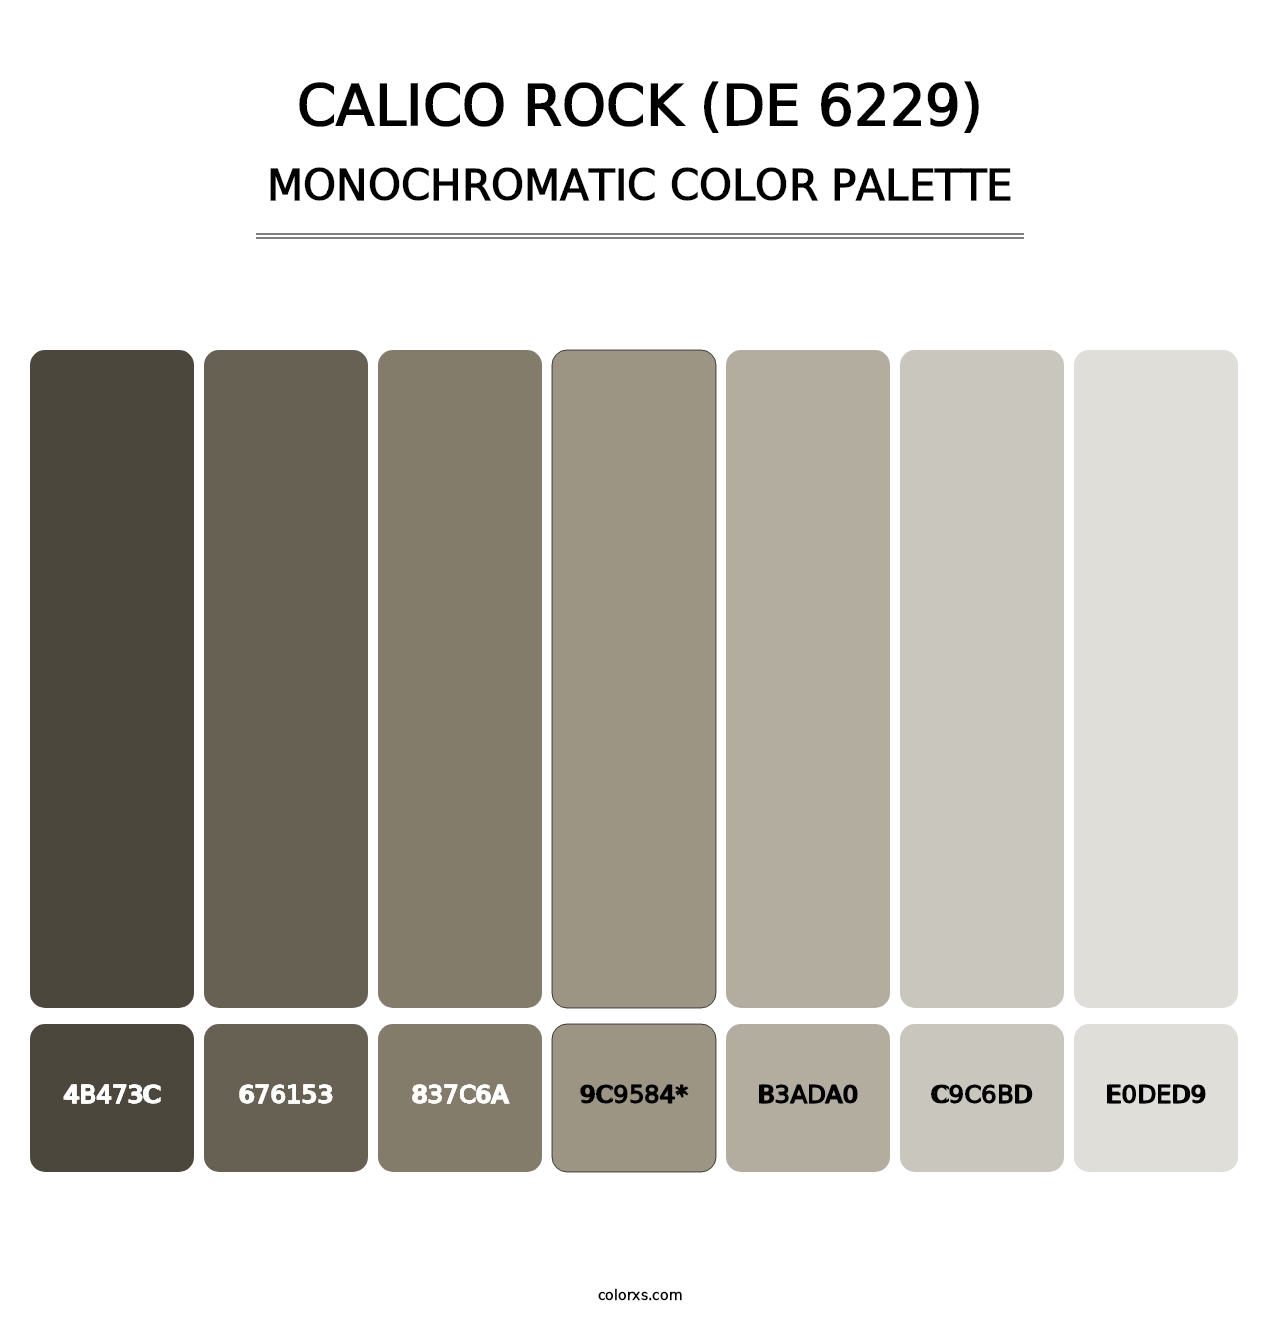 Calico Rock (DE 6229) - Monochromatic Color Palette